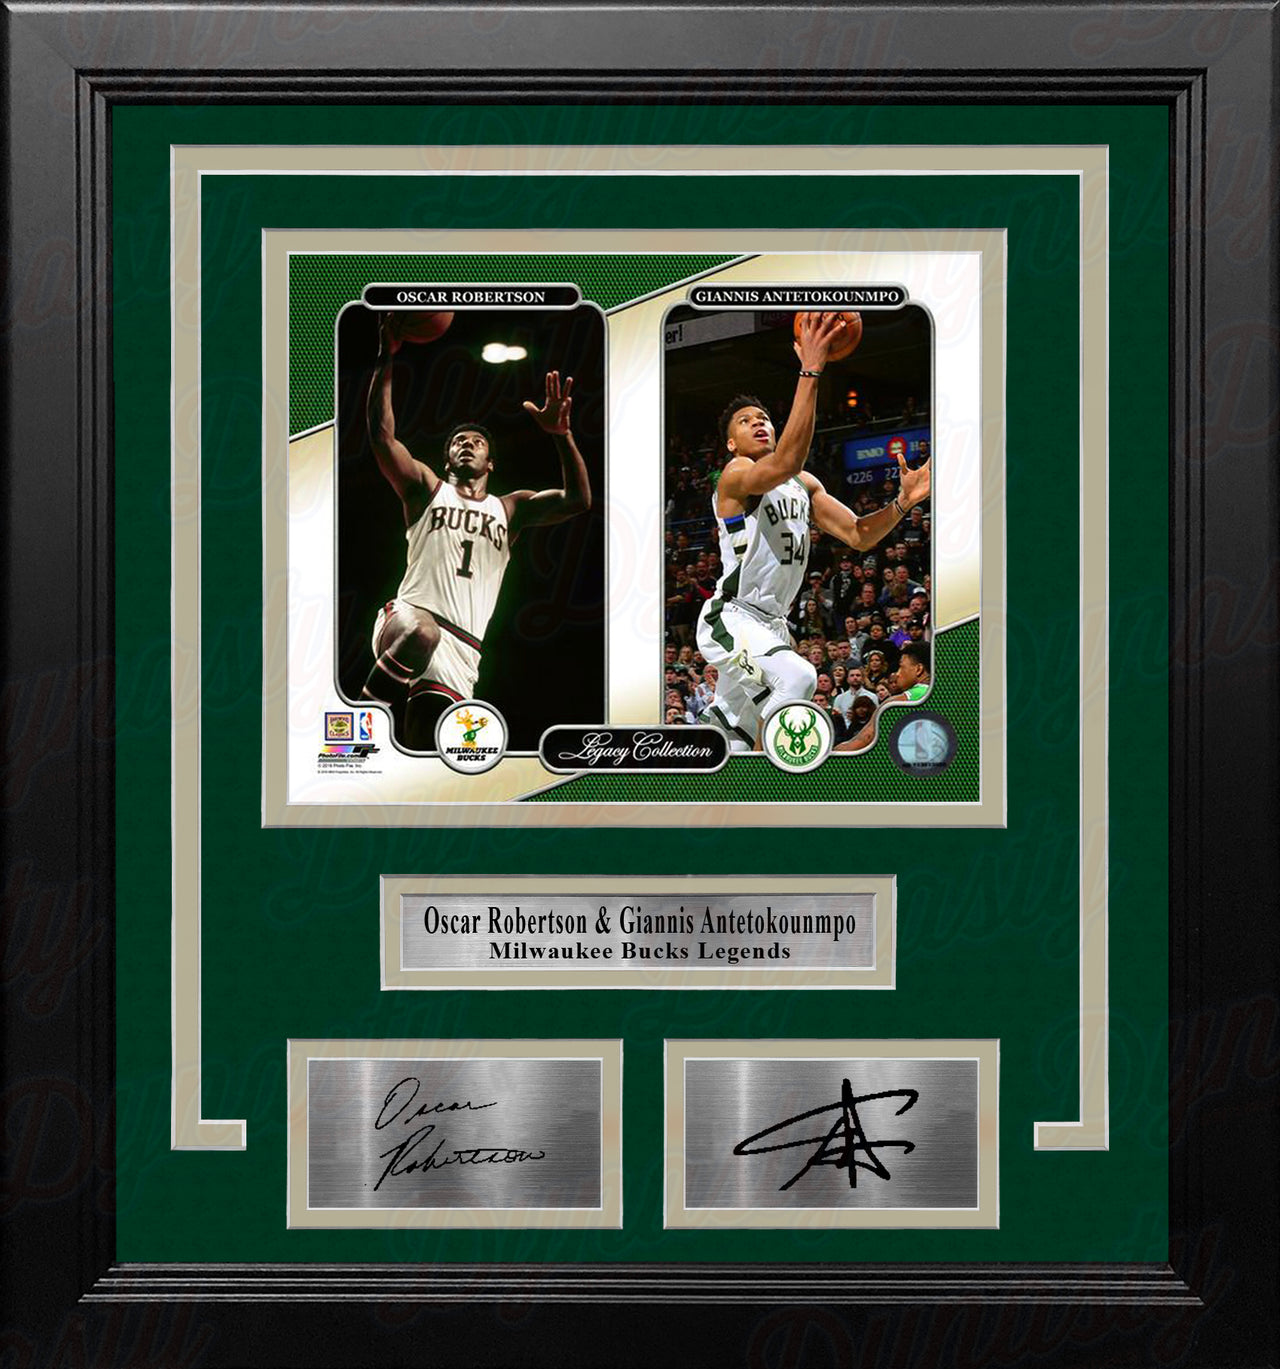 Oscar Robertson & Giannis Antetokounmpo Milwaukee Bucks 8x10 Framed Photo with Engraved Autographs